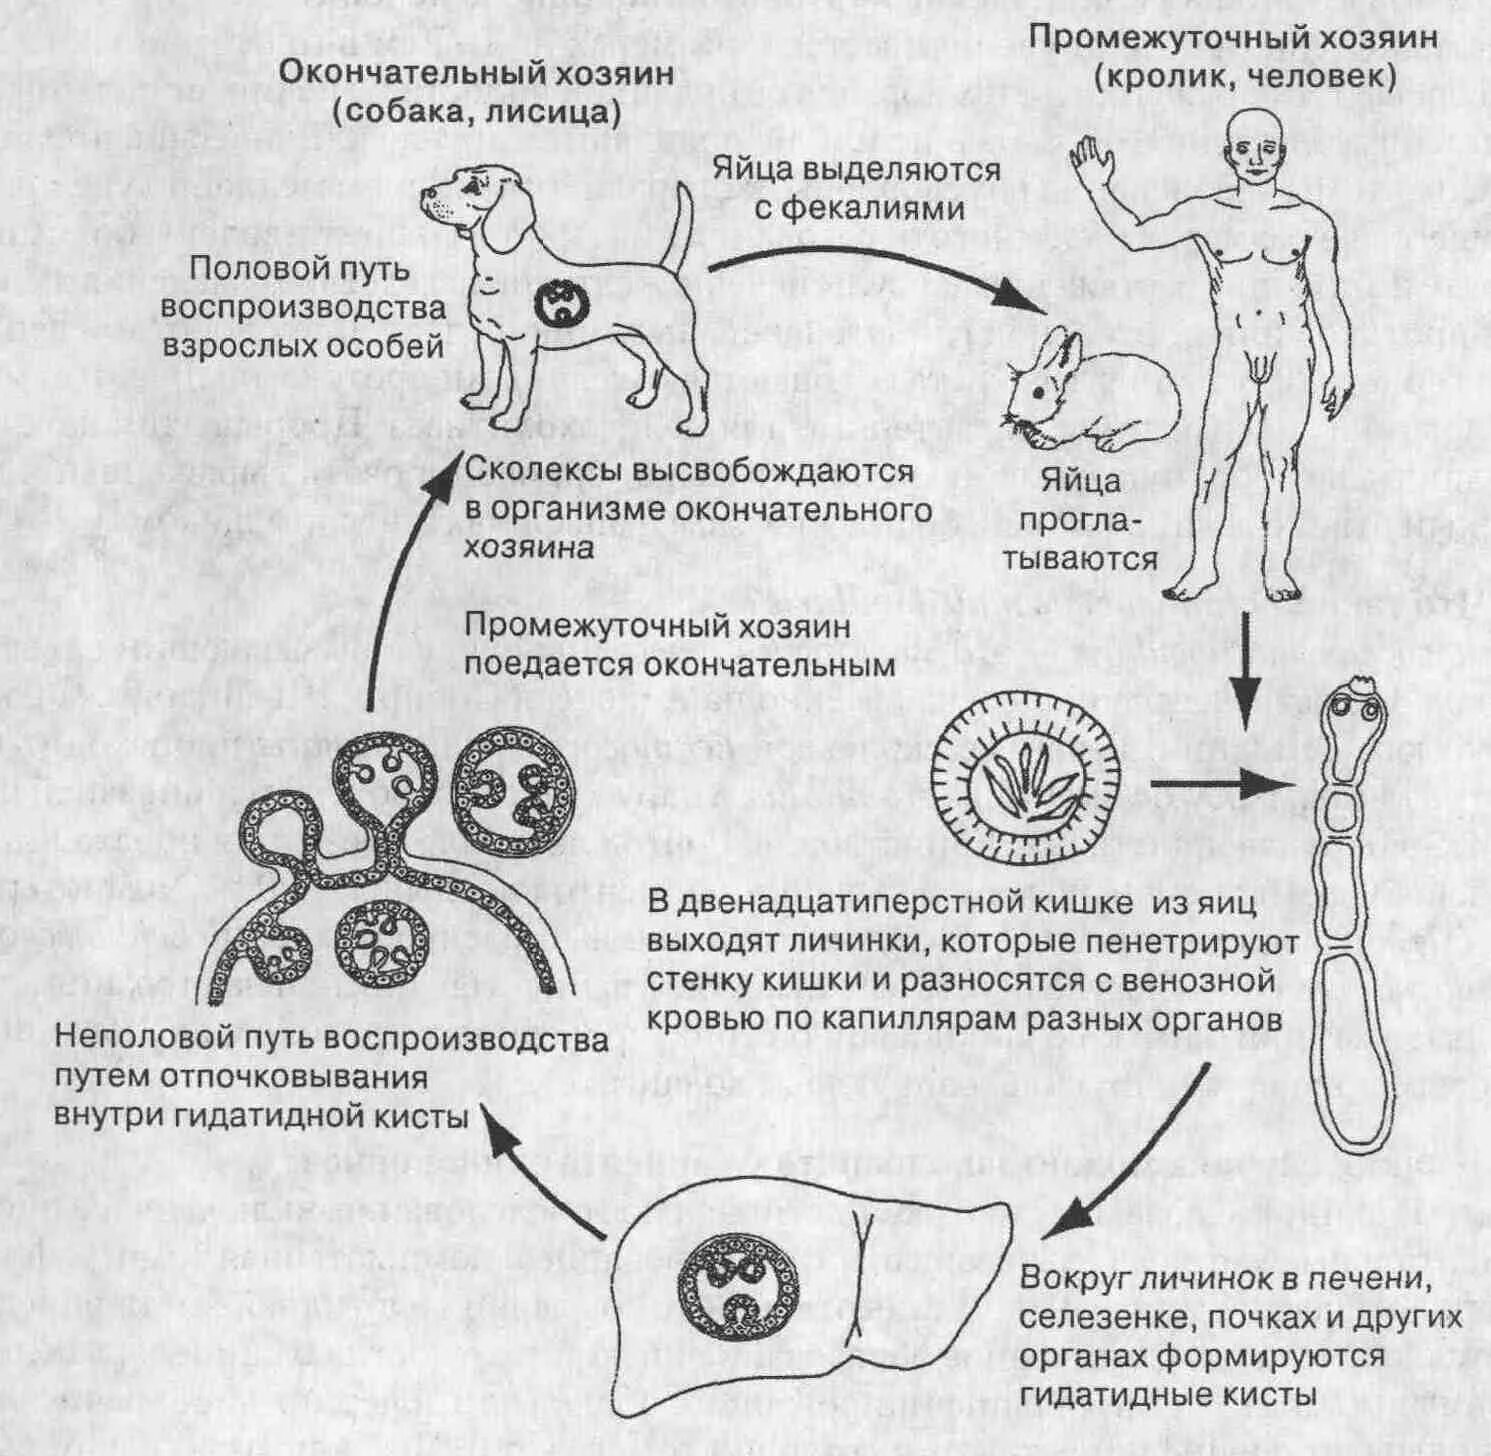 Может ли человек быть промежуточным хозяином. Цикл развития эхинококка Echinococcus granulosus. Эхинококк Echinococcus granulosus жизненный цикл. Эхинококкоз цикл развития схема. Цикл развития Echinococcus granulosus.